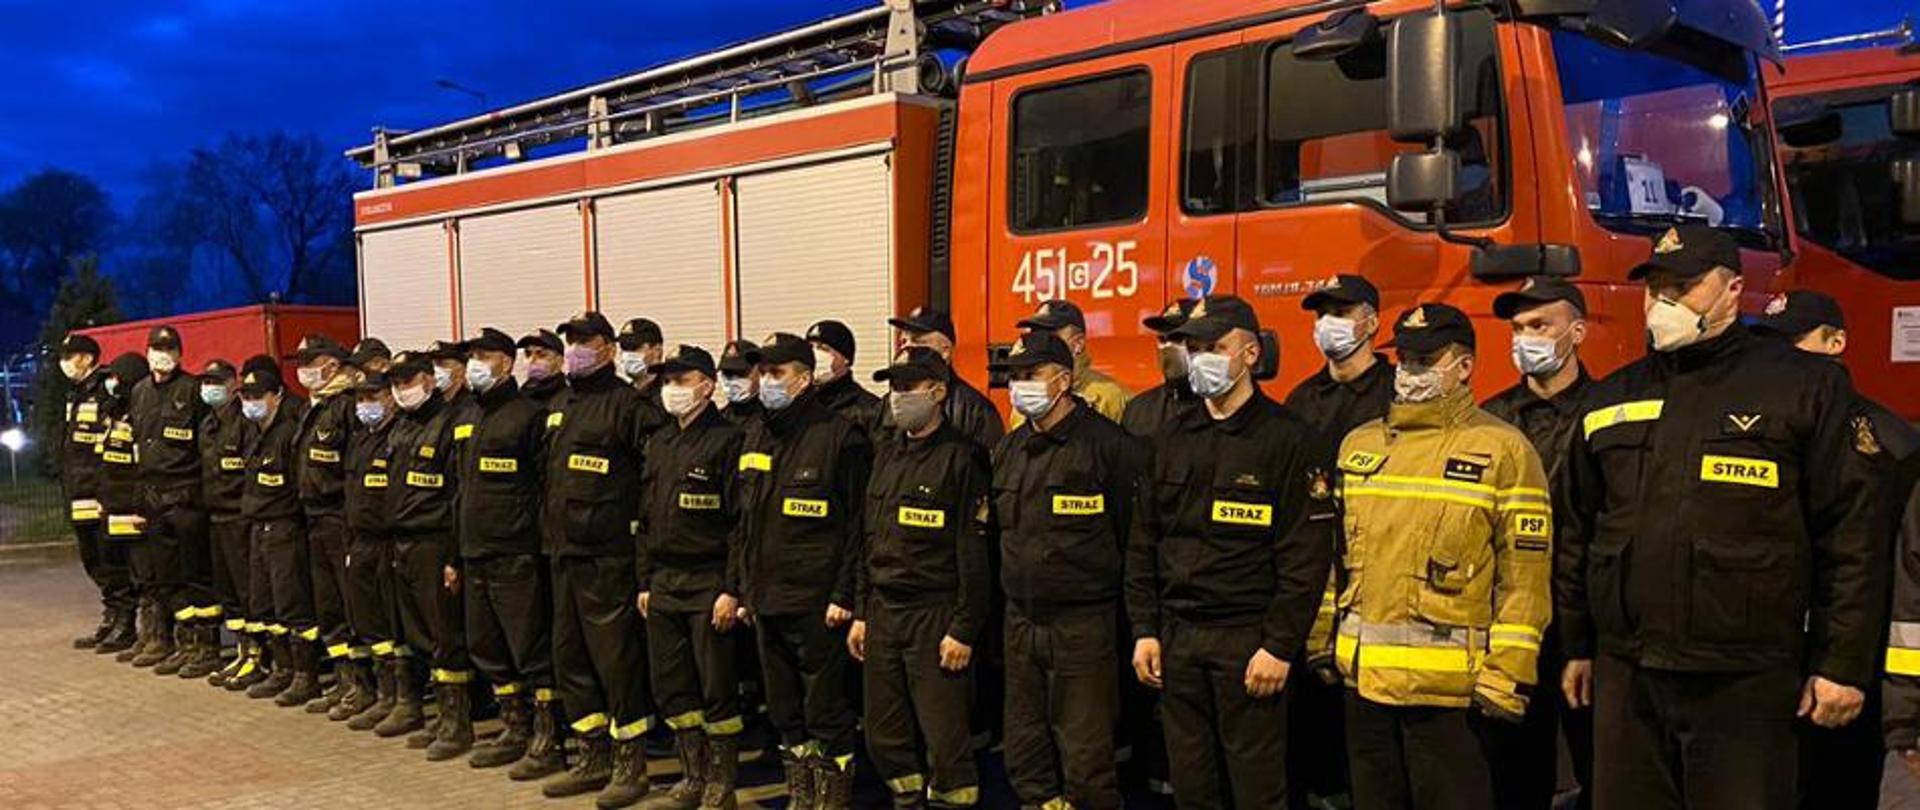 Zdjęcie przedstawia grupę strażaków w mundurach, stojących w dwuszeregu na tle samochodu pożarniczego.